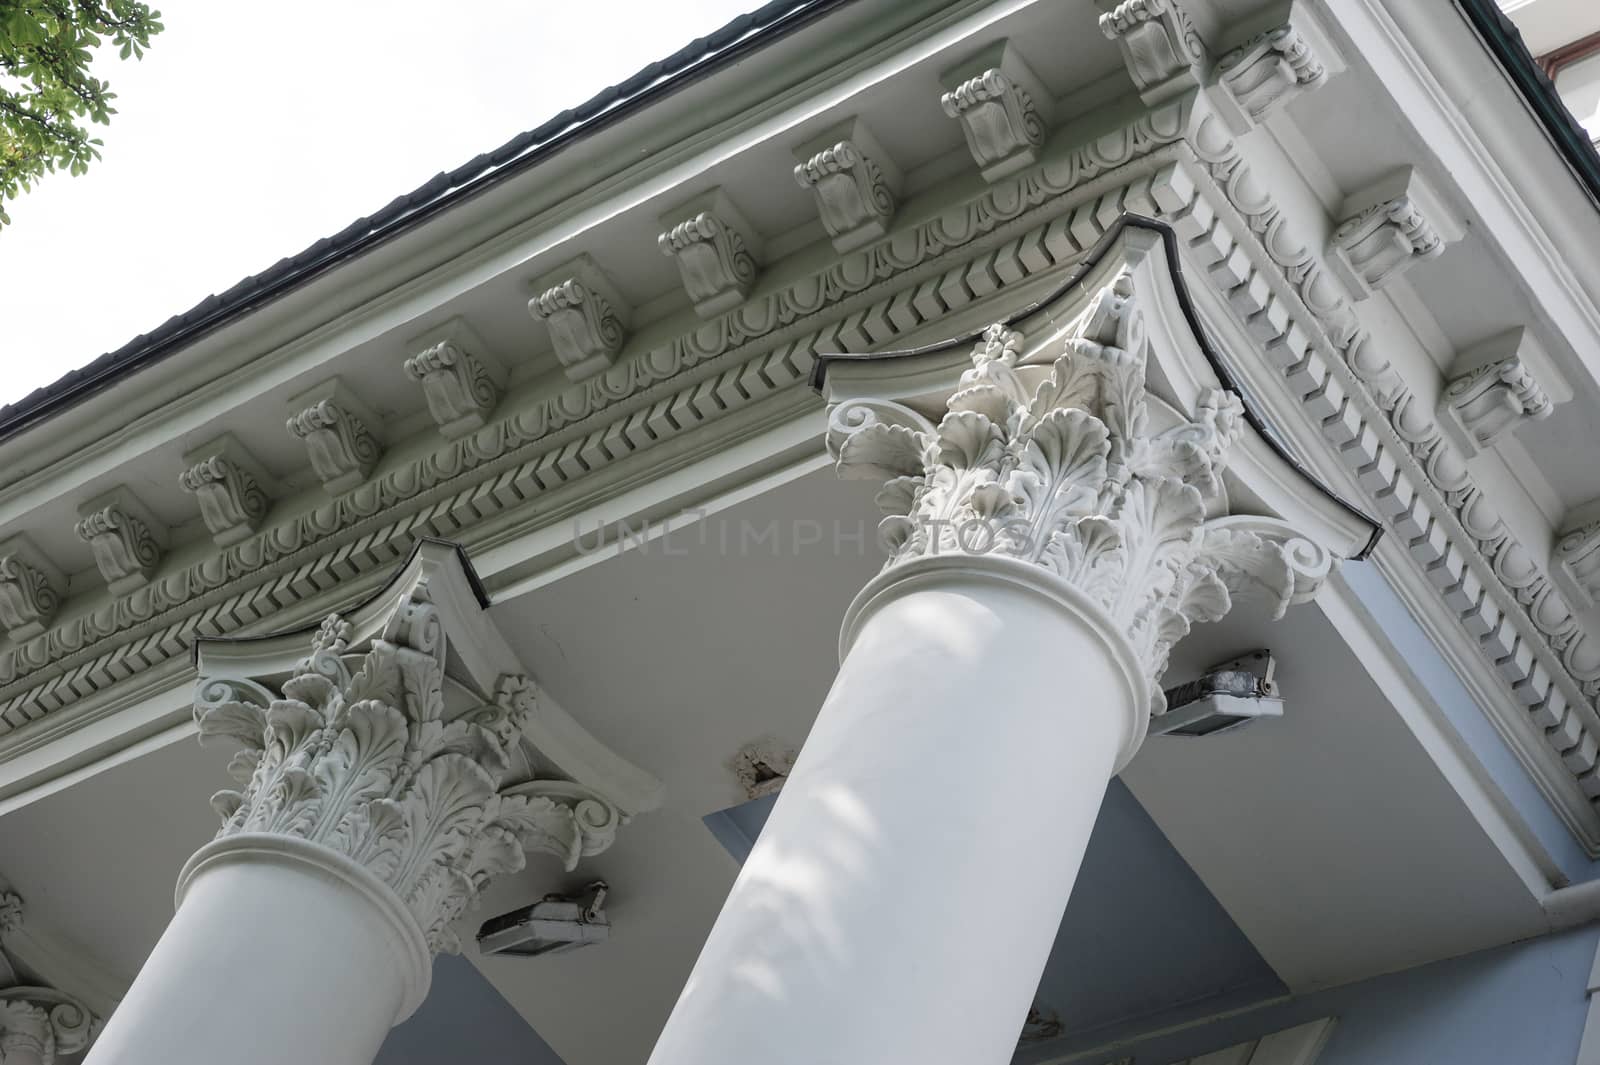 Capital gray closeup Corinthian columns on a building facade.